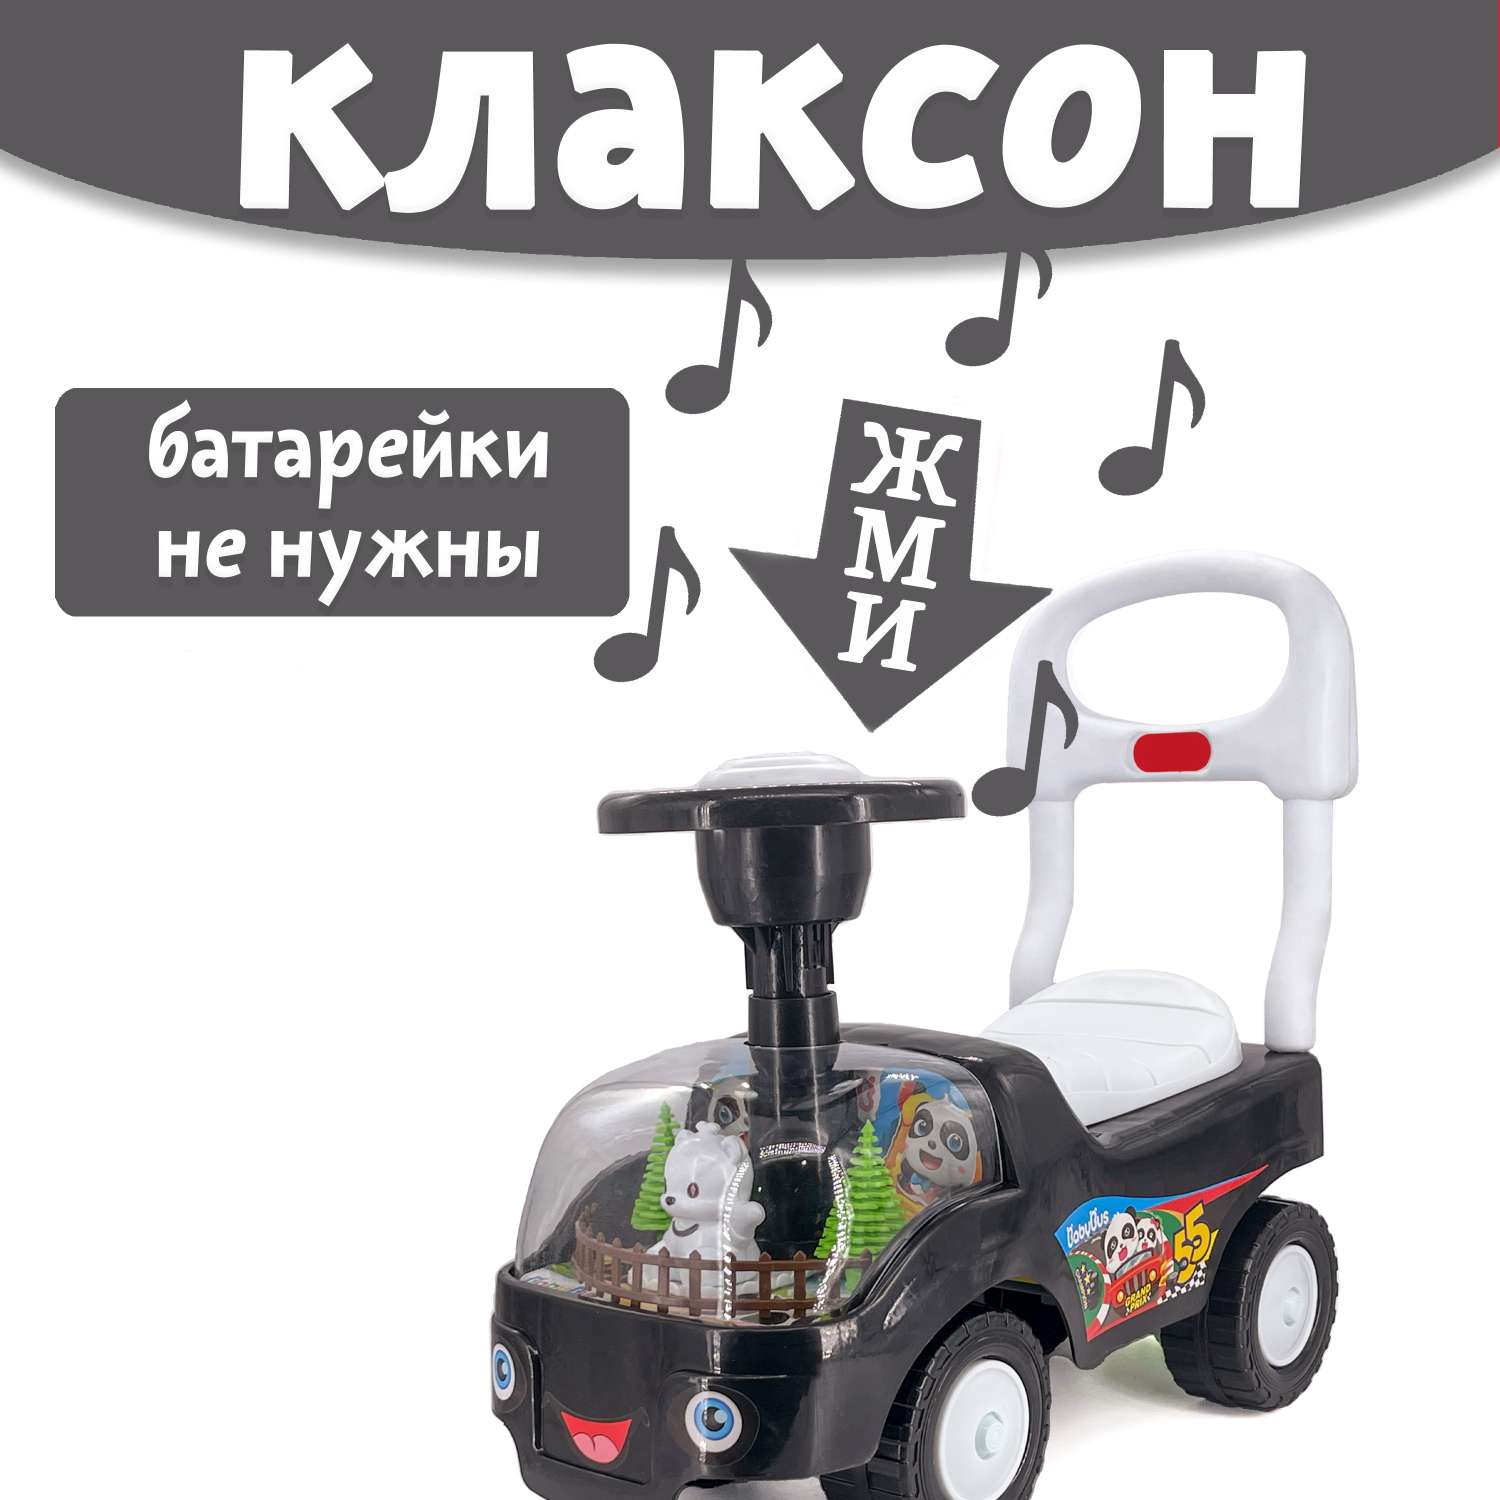 Машина каталка Нижегородская игрушка 134 Черная - фото 3